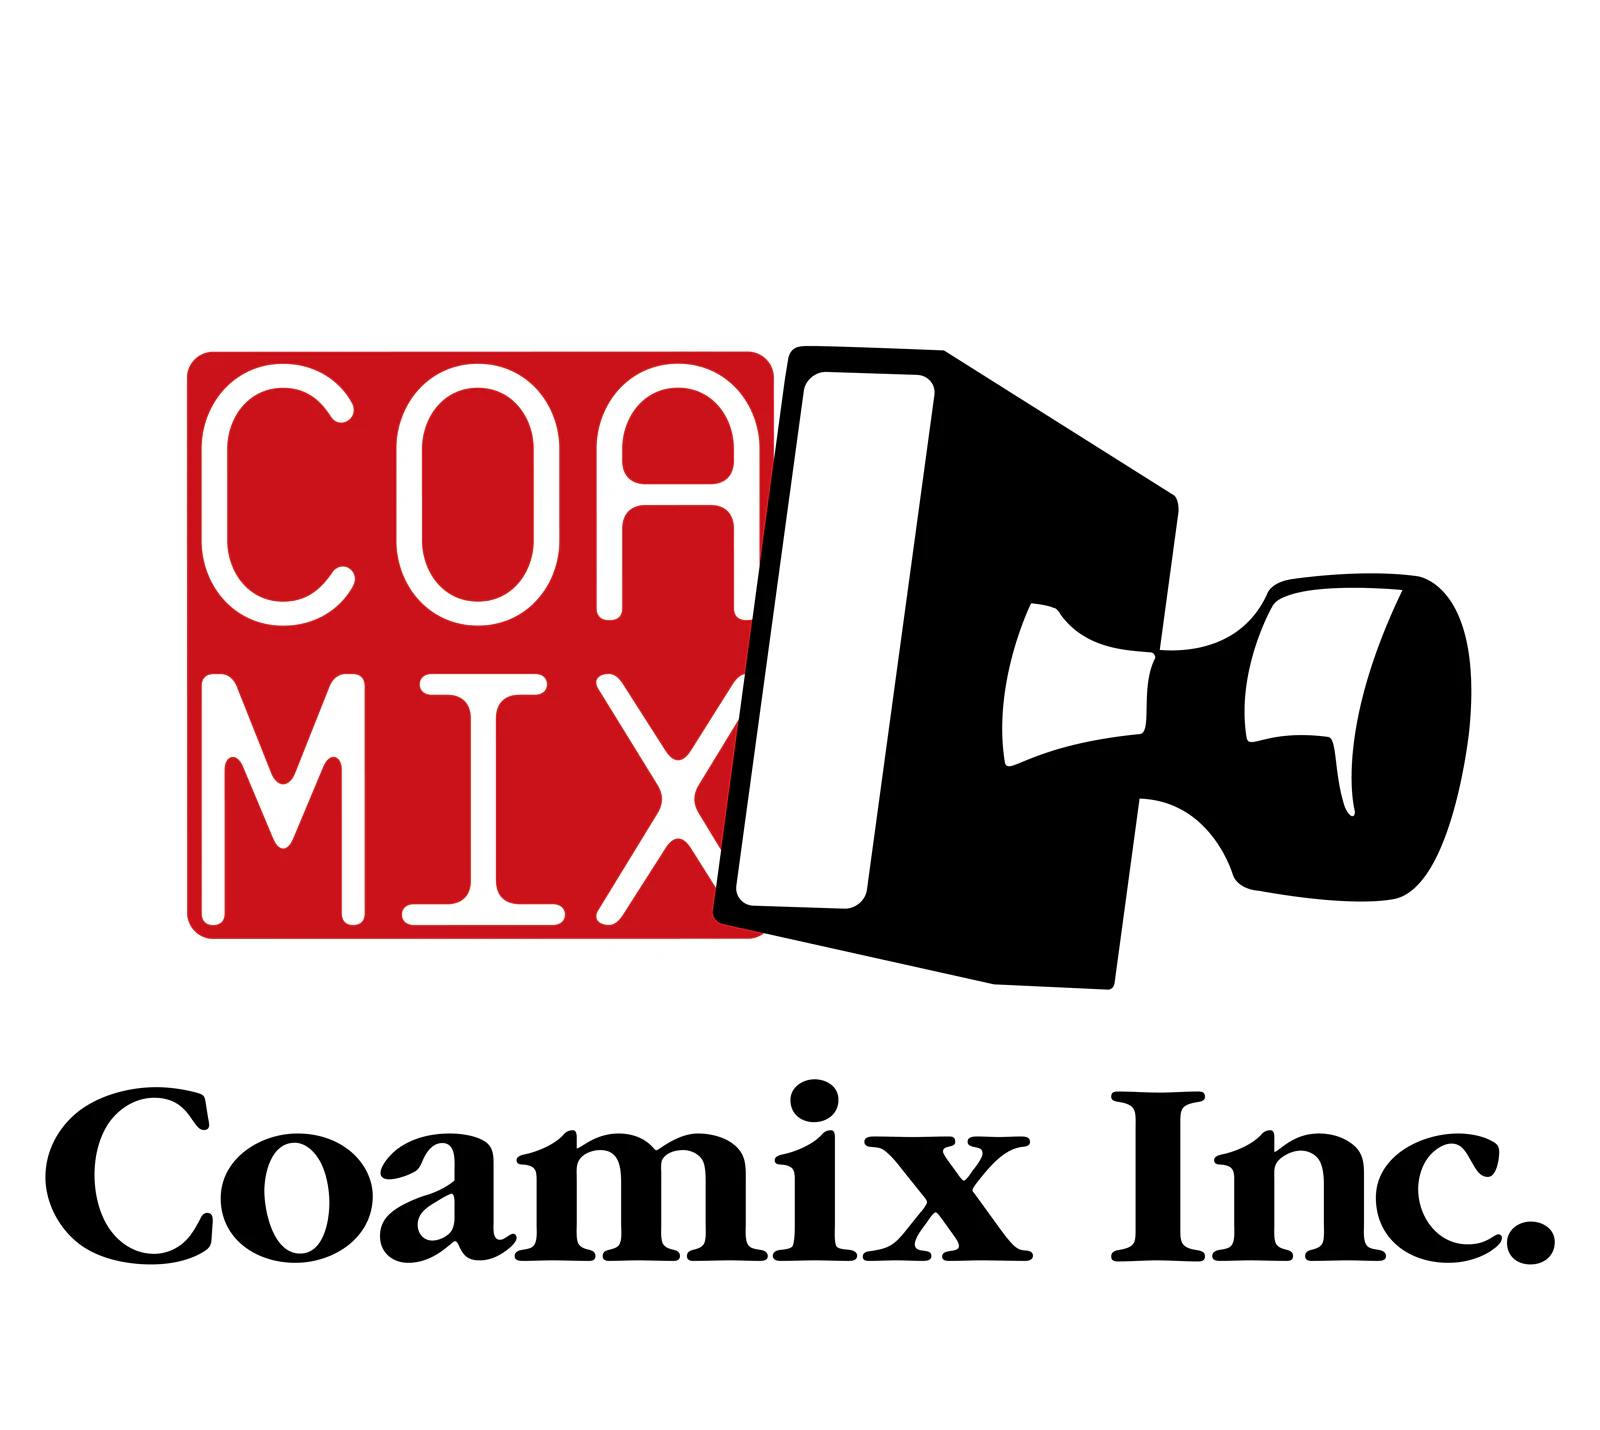 Situs web resmi Coremix telah diperbarui! “Katalog Manga” yang memungkinkan Anda melihat pratinjau dan membeli dengan segera sangatlah nyaman!